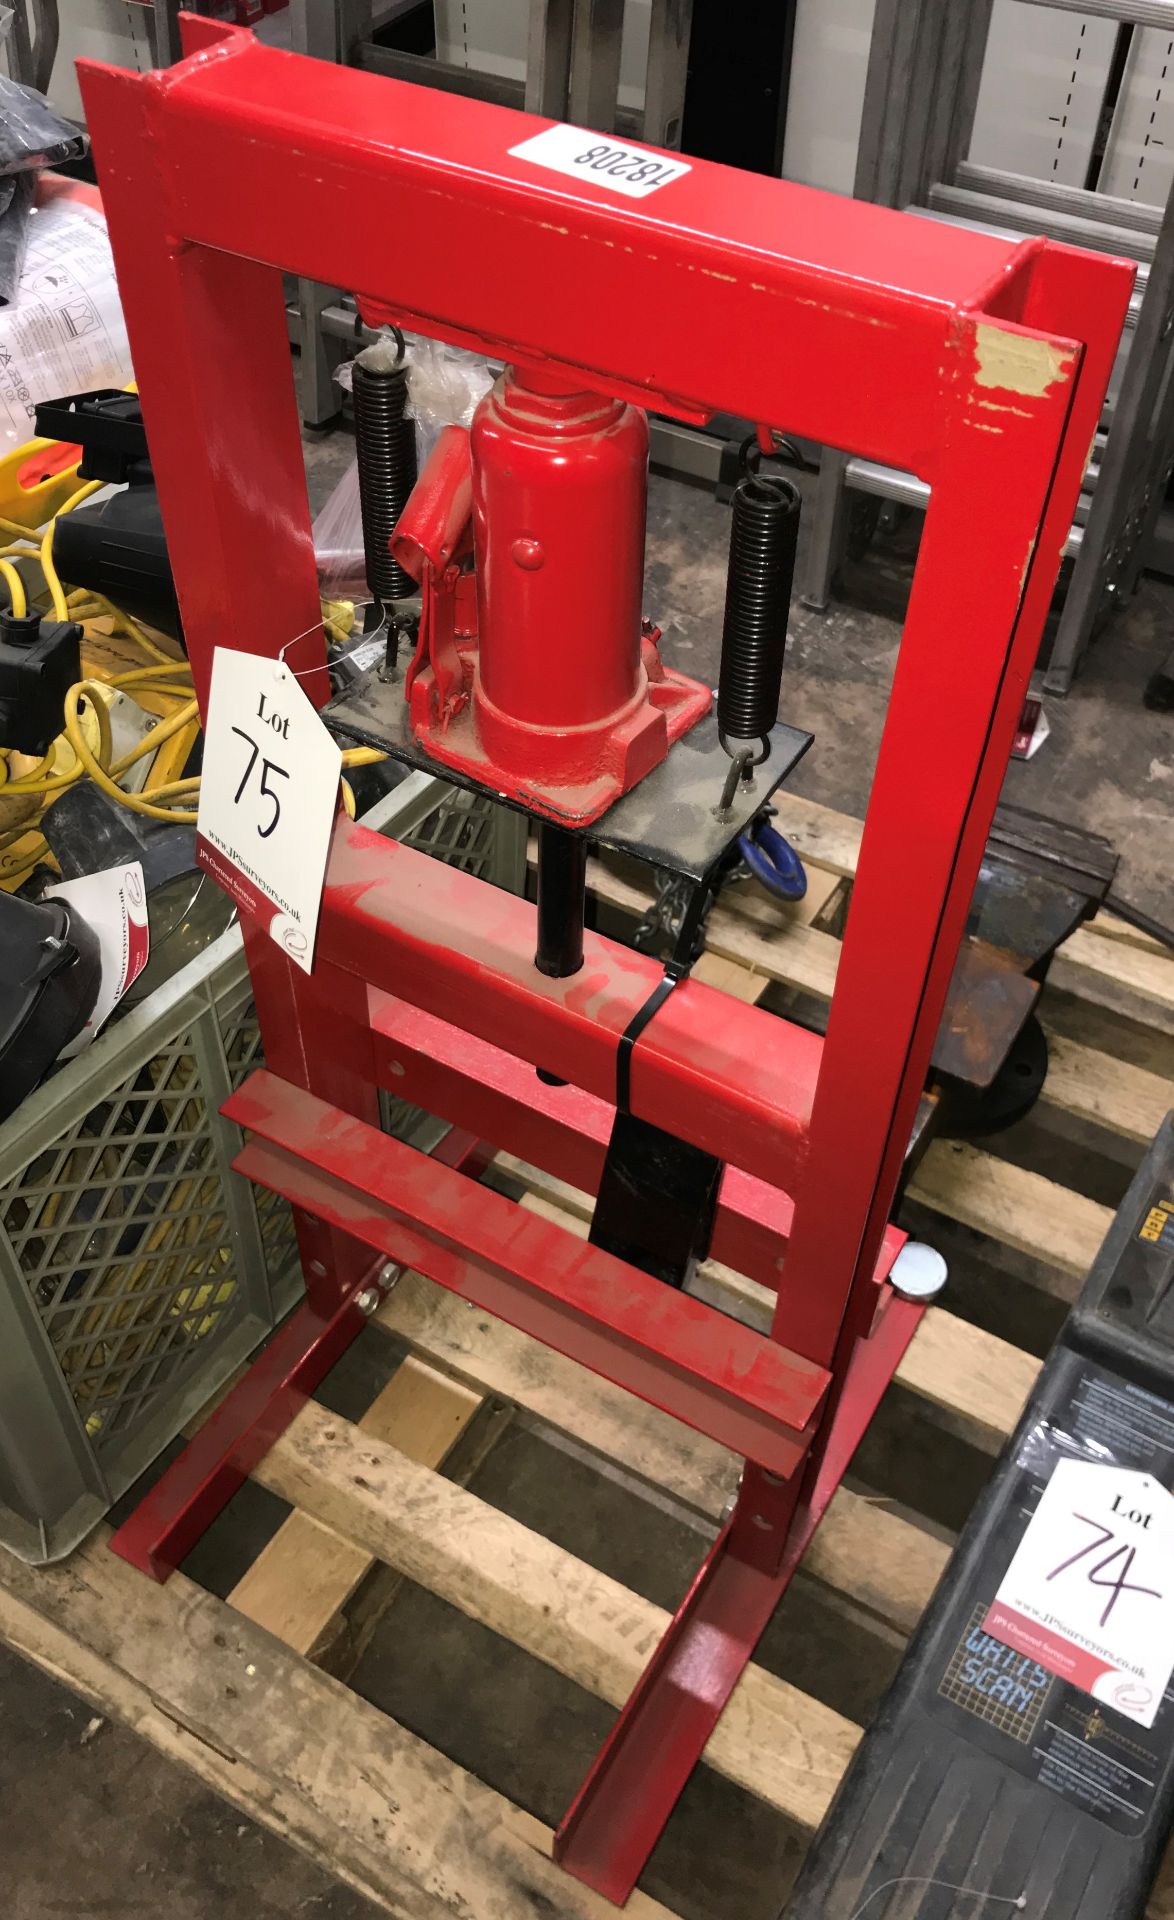 Timbertech 6T Hydraulic Press